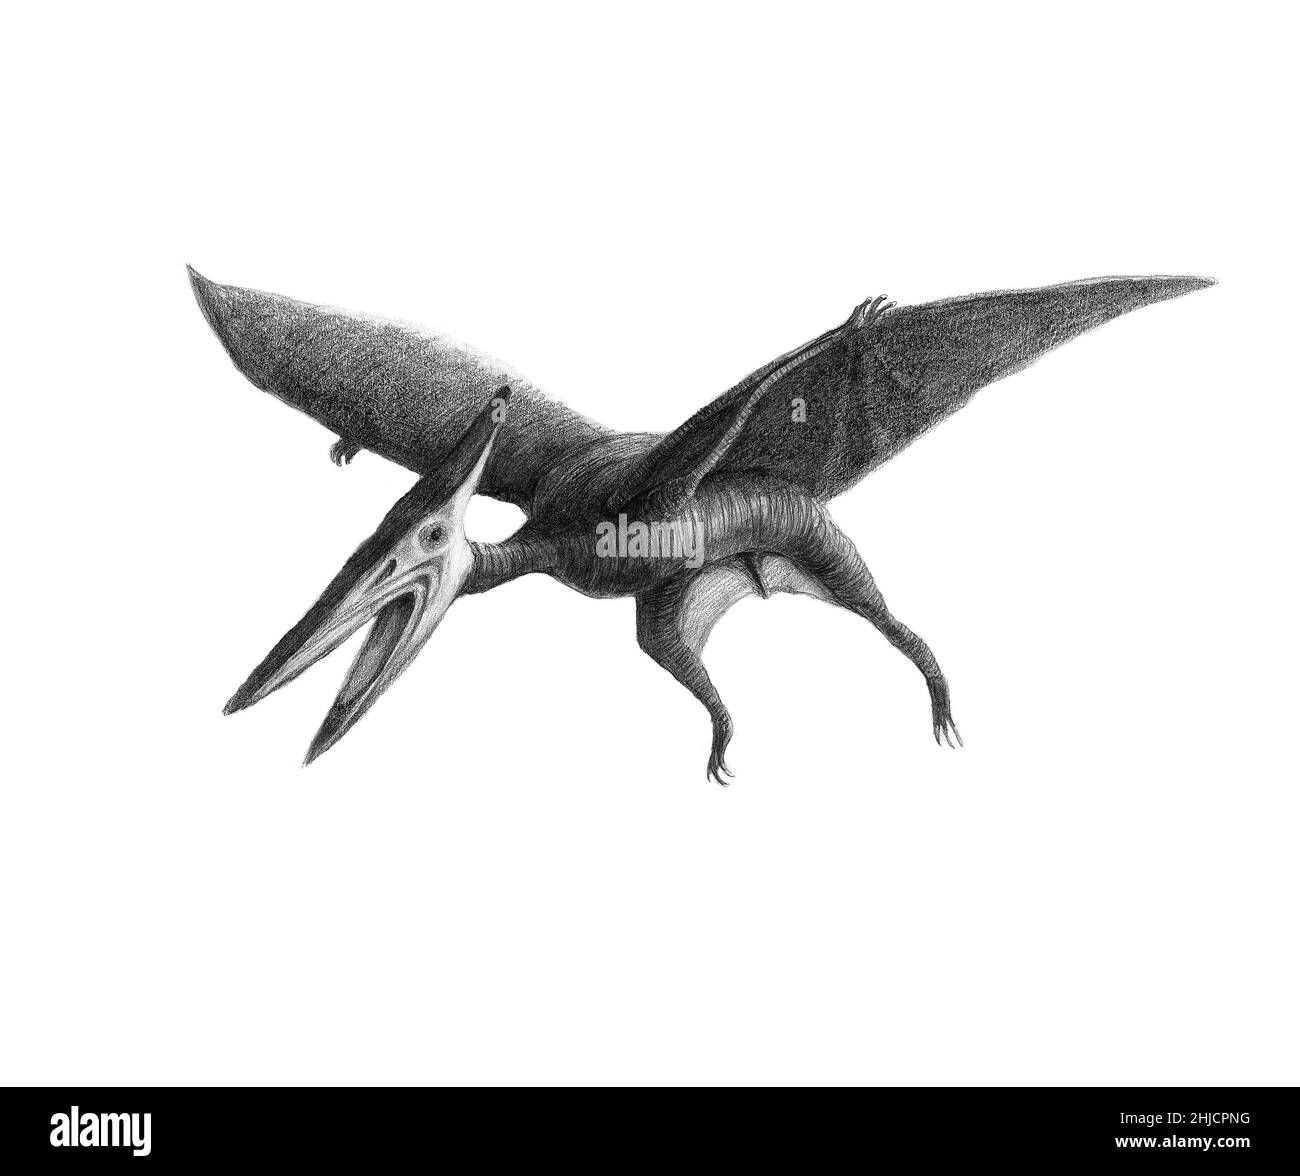 Pteranodon pterosaur (anche Pterodactyl), opera d'arte. Pteranodon era un rettile volante che abitava ciò che ora è Nord America ed Europa durante il tardo periodo cretaceo, tra 85 e 75 milioni di anni fa. Era carnivoro, e probabilmente nutrito di pesce, che ha catturato dall'acqua nella sua brina senza denti. La sua apertura alare potrebbe raggiungere fino a dieci metri. Foto Stock